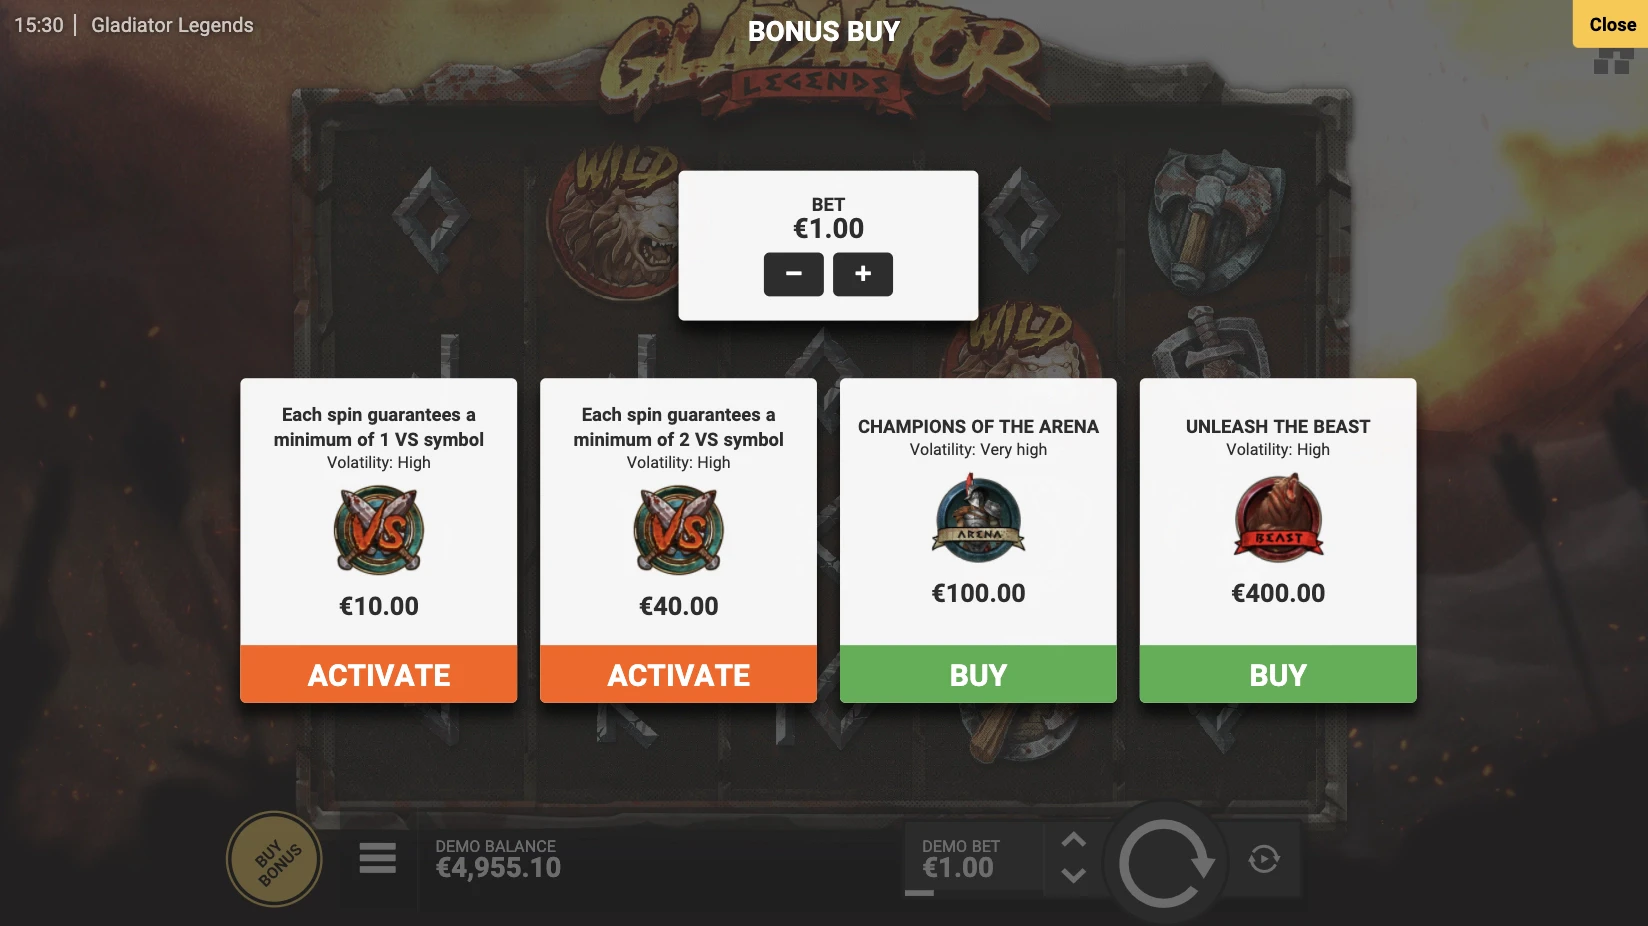 Il vous sera possible d’acheter les parties bonus sur la machine a sous Gladiator Legends